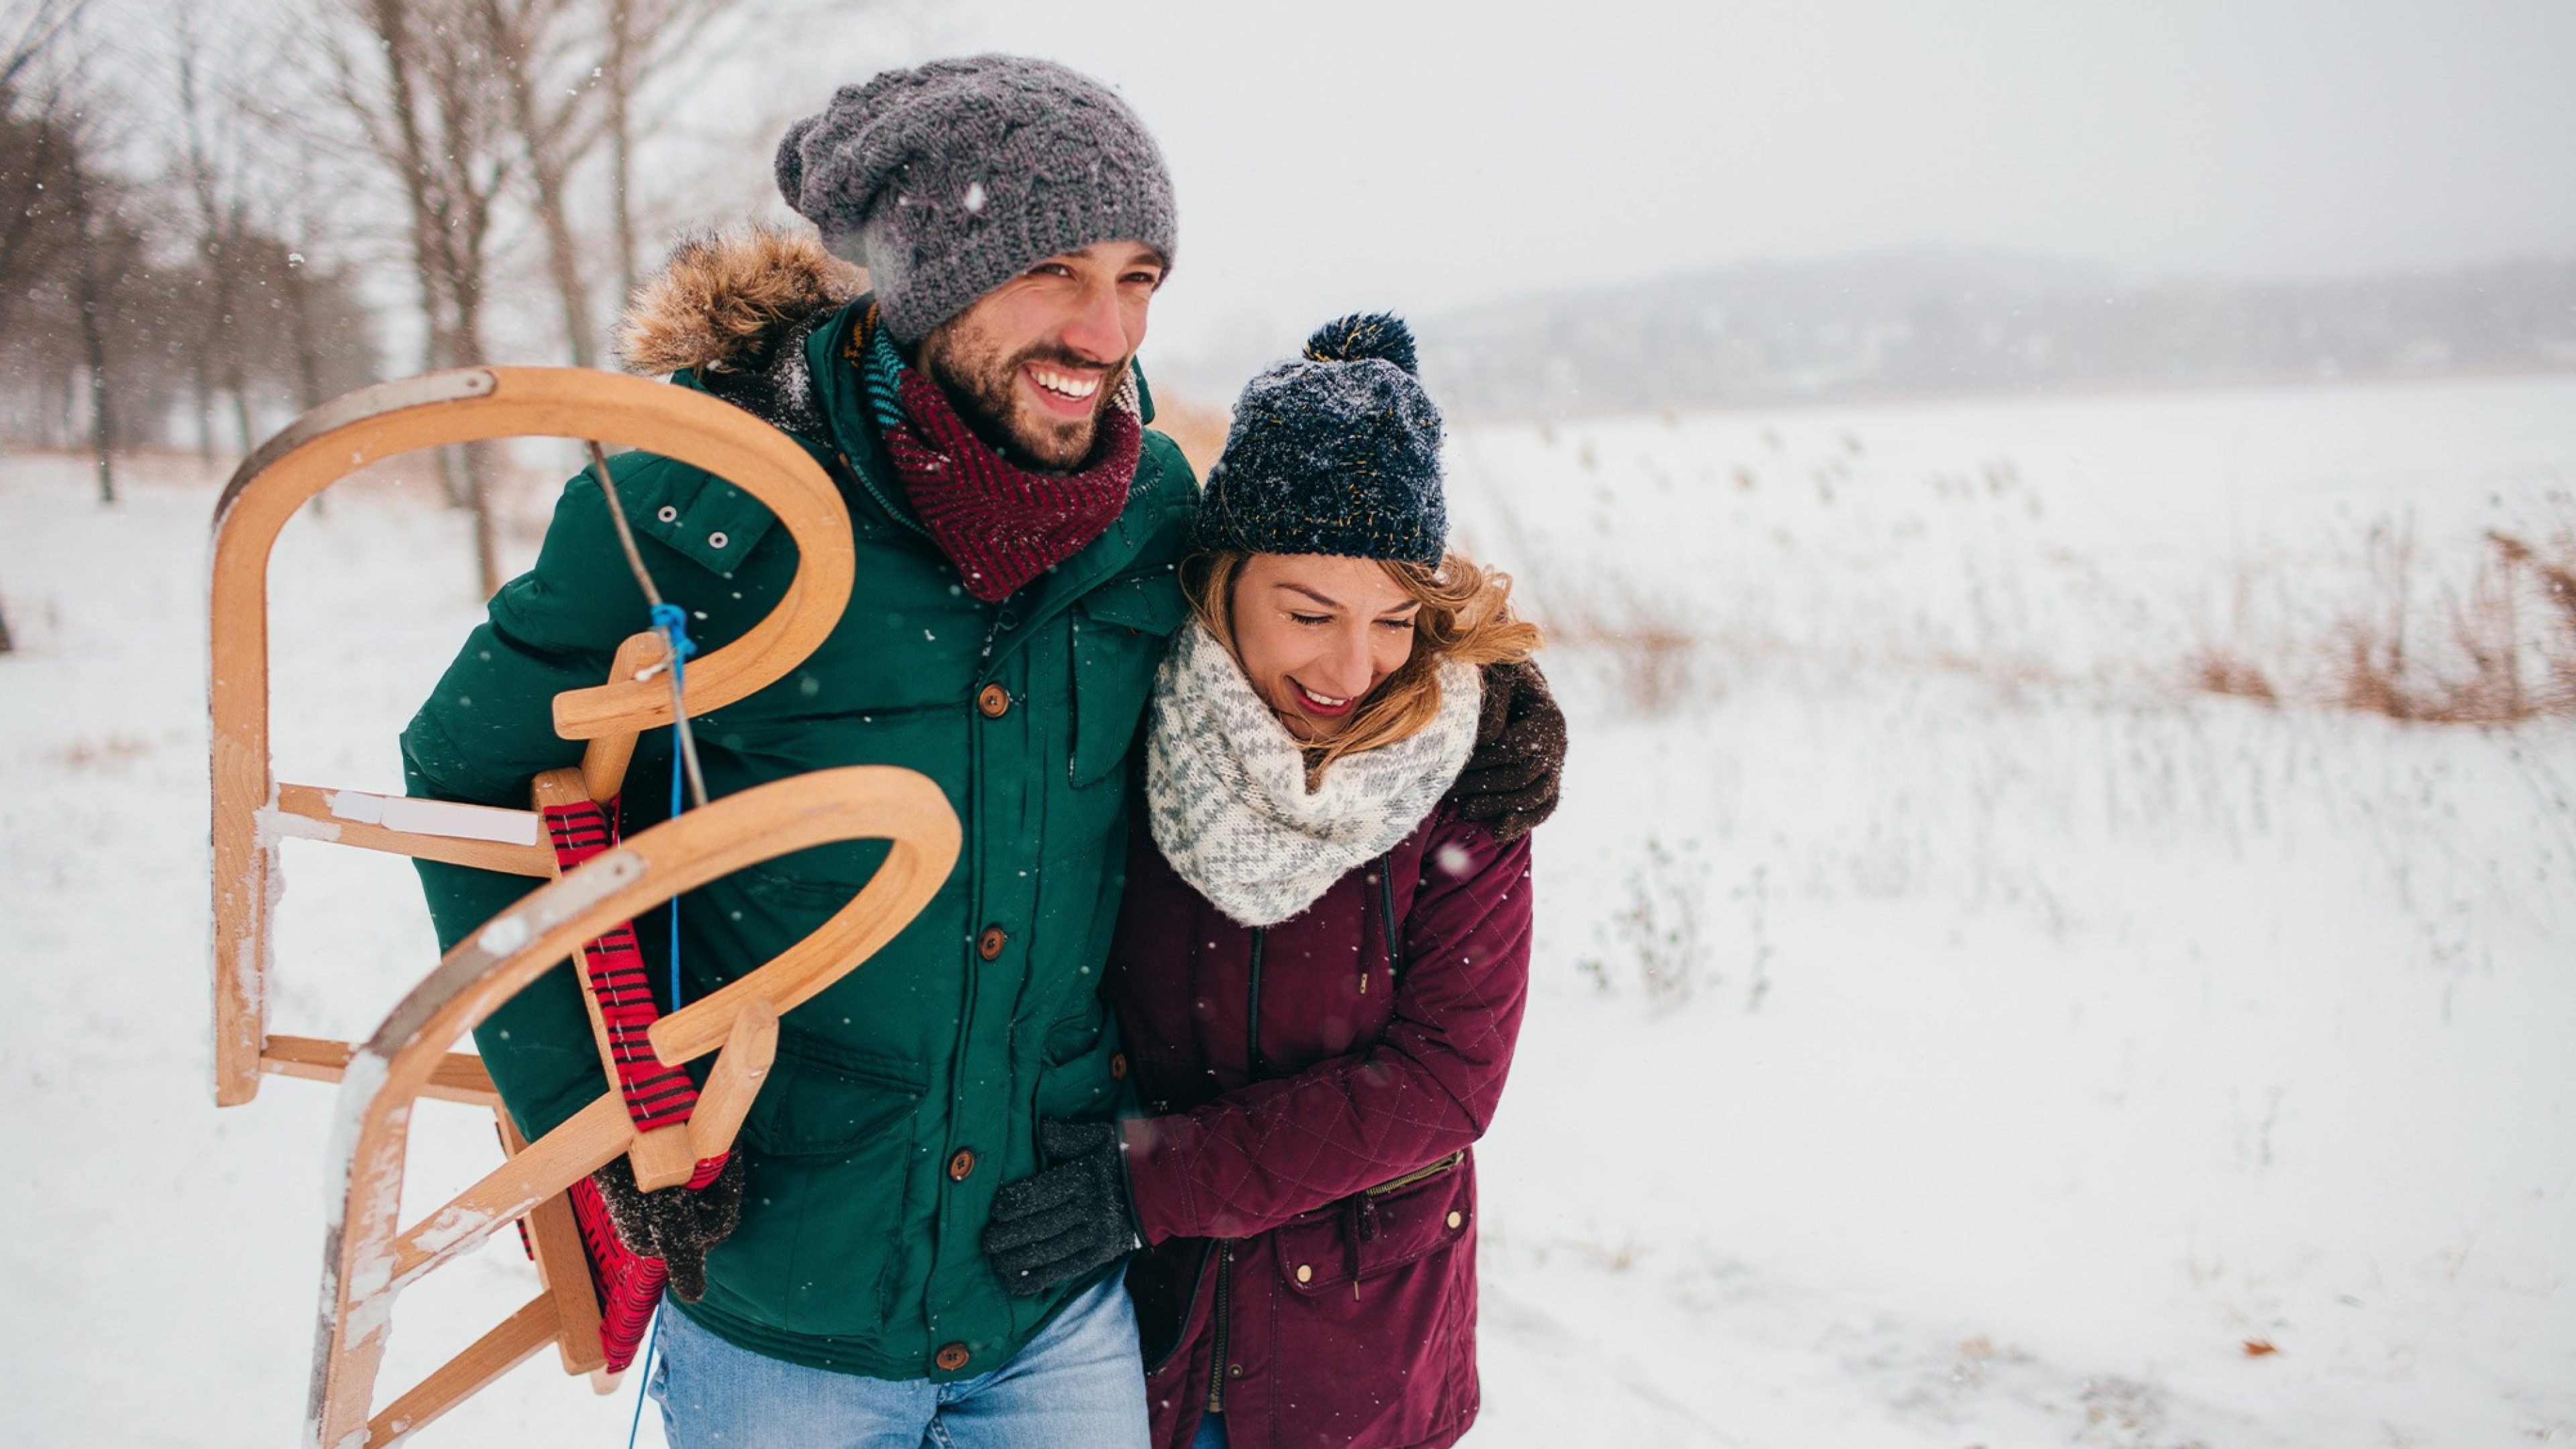 Glückliches Paar geht im Schnee spazieren, der Mann hat einen Schlitten in der Hand